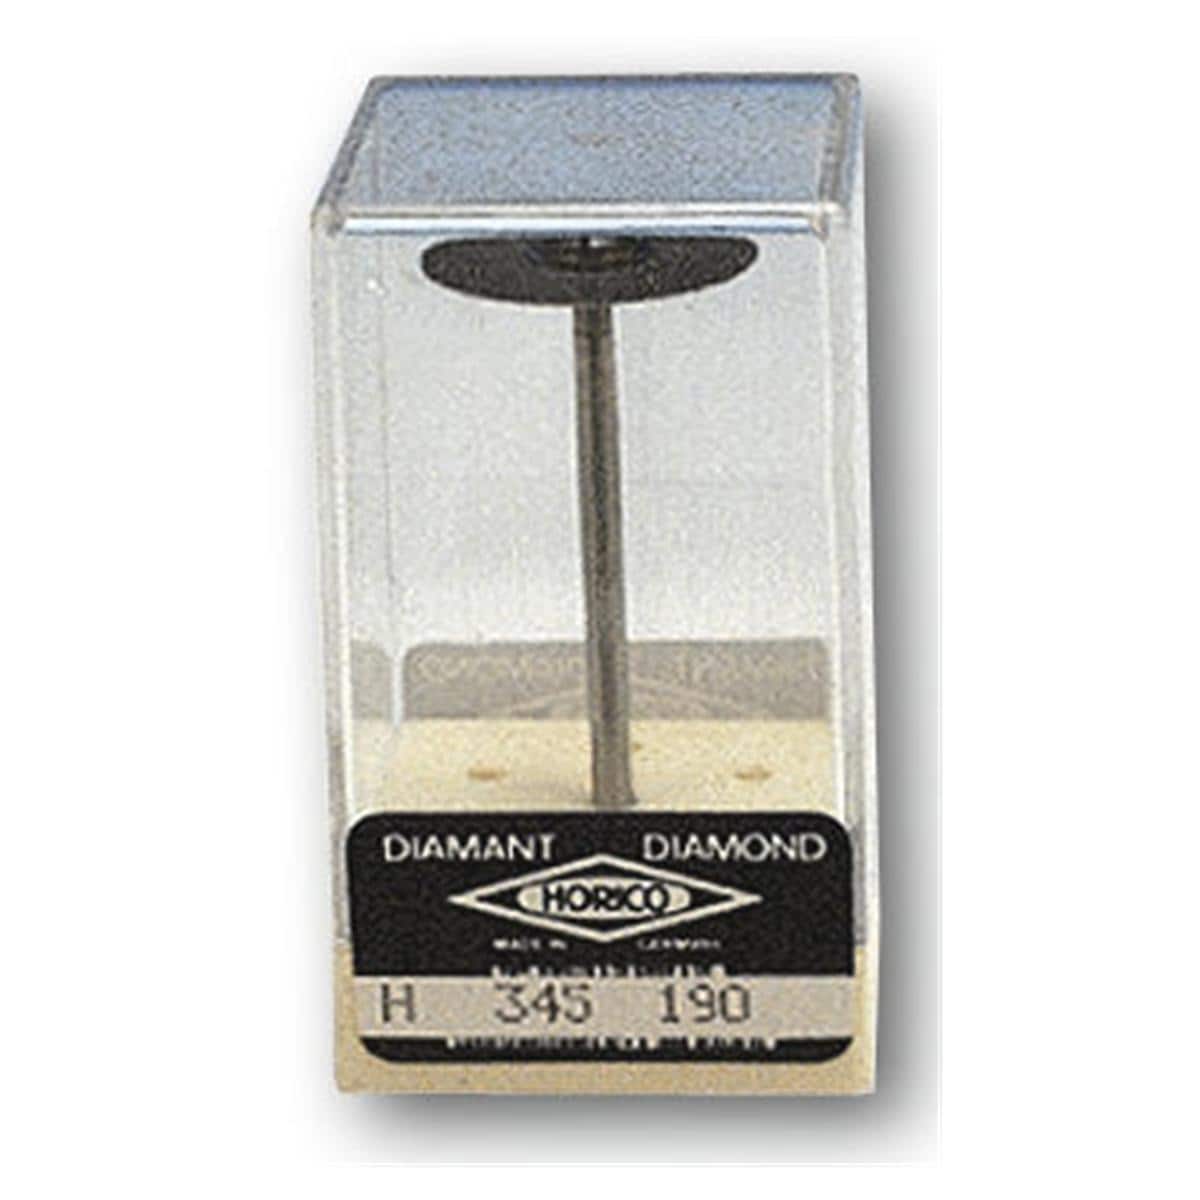 Diamantschijf Diaflex H 345 - HP 190,  19 mm - dubbelzijdig slijpend